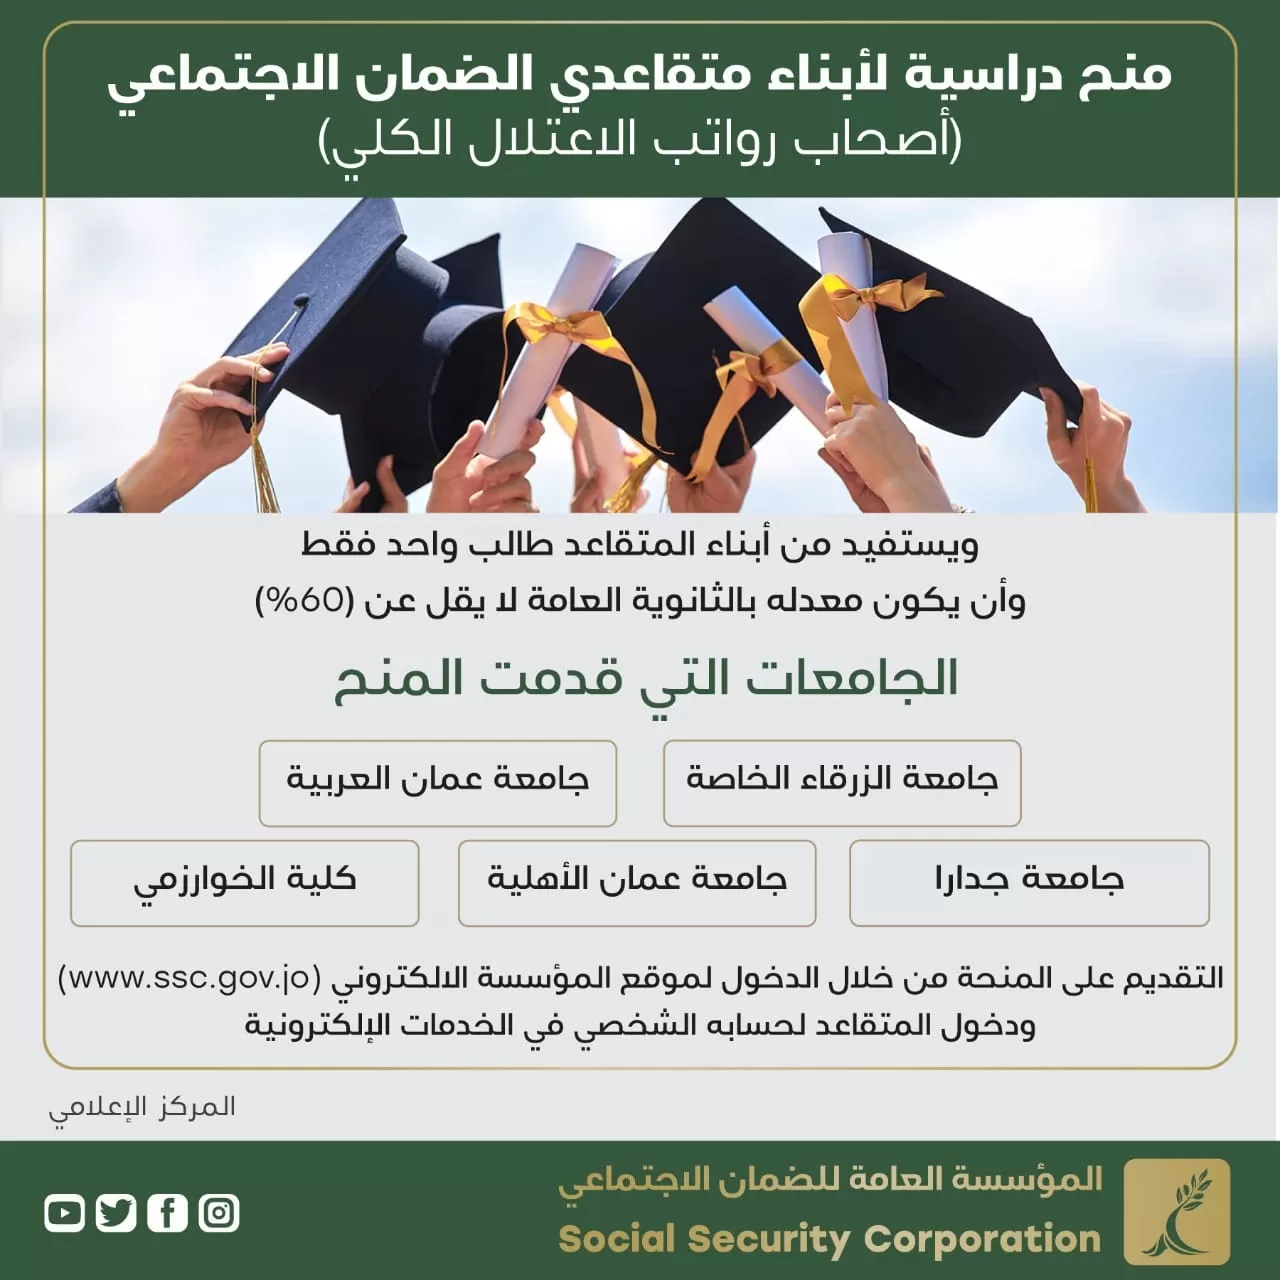 مدار الساعة,أخبار الجامعات الأردنية,المؤسسة العامة للضمان الاجتماعي,الضمان الاجتماعي